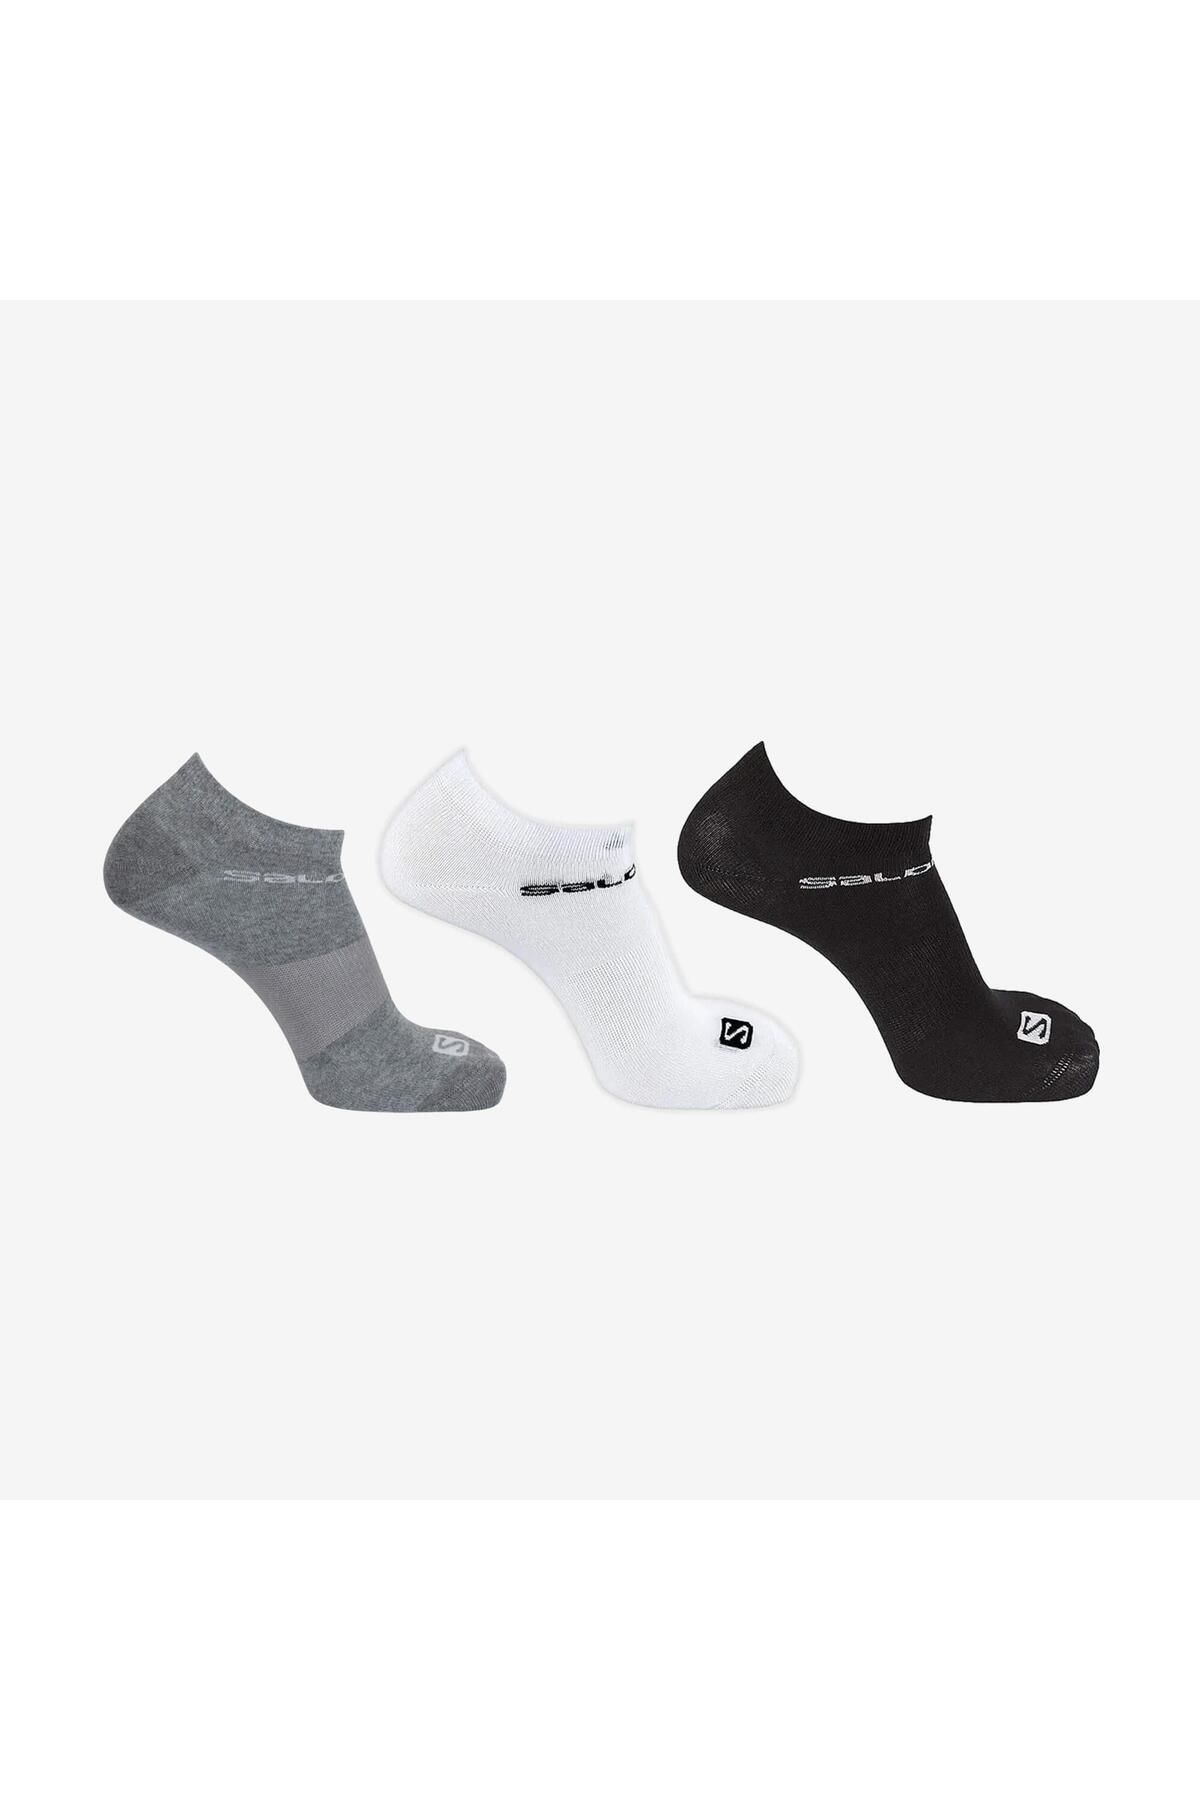 Salomon L36937500 Low Unisex Üçlü Kısa Spor Çorap